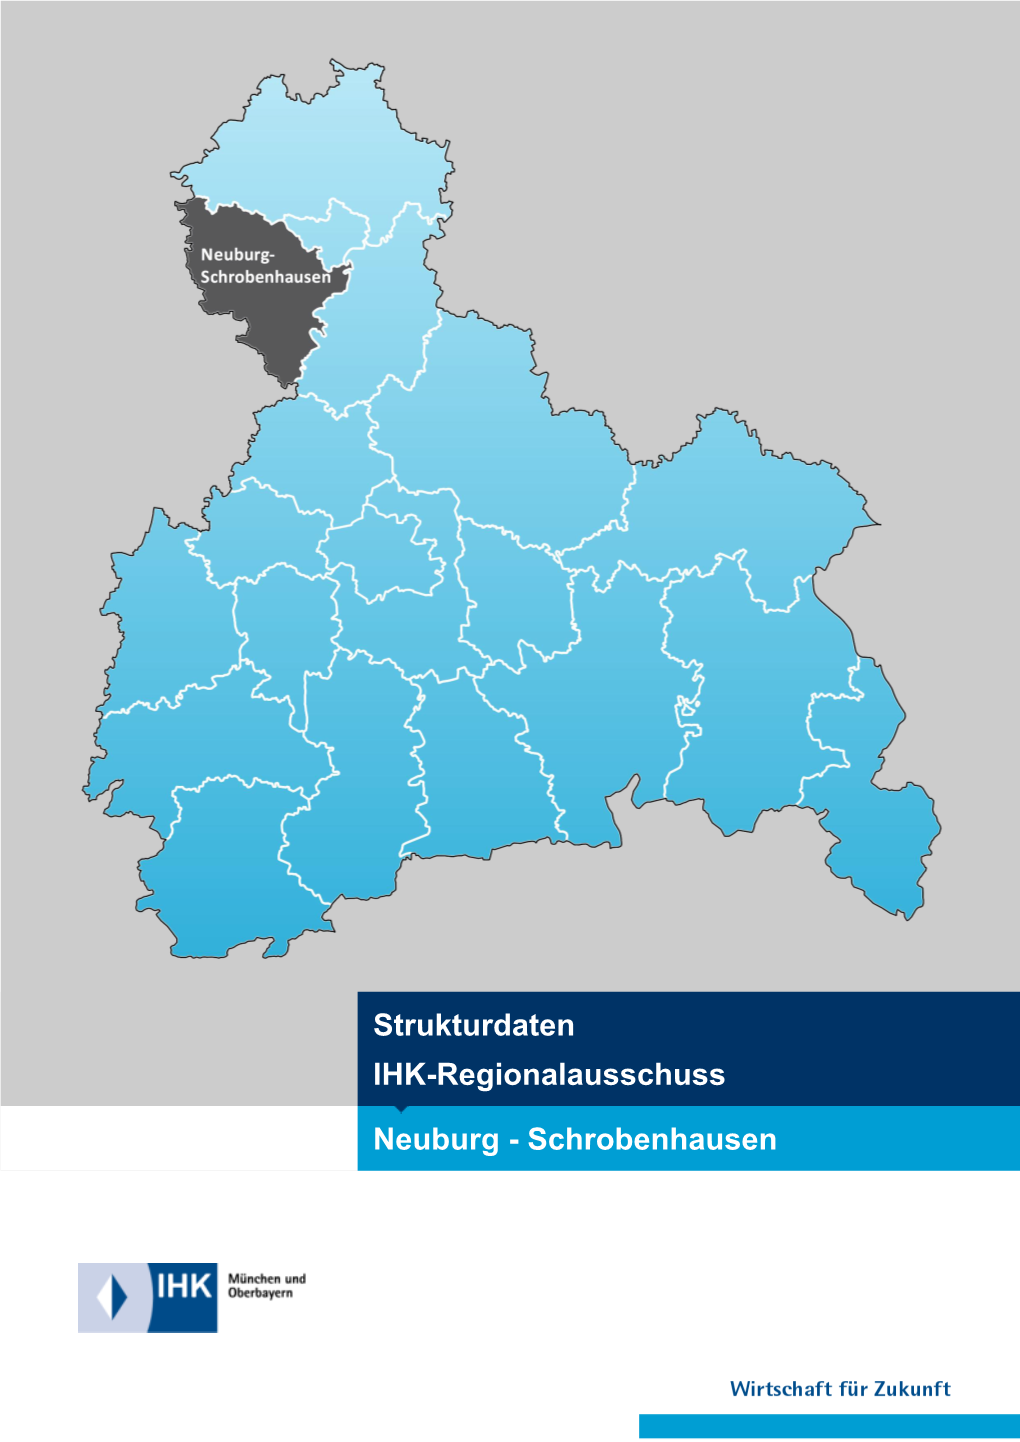 Neuburg - Schrobenhausen IHK-Regionalausschuss Neuburg - Schrobenhausen